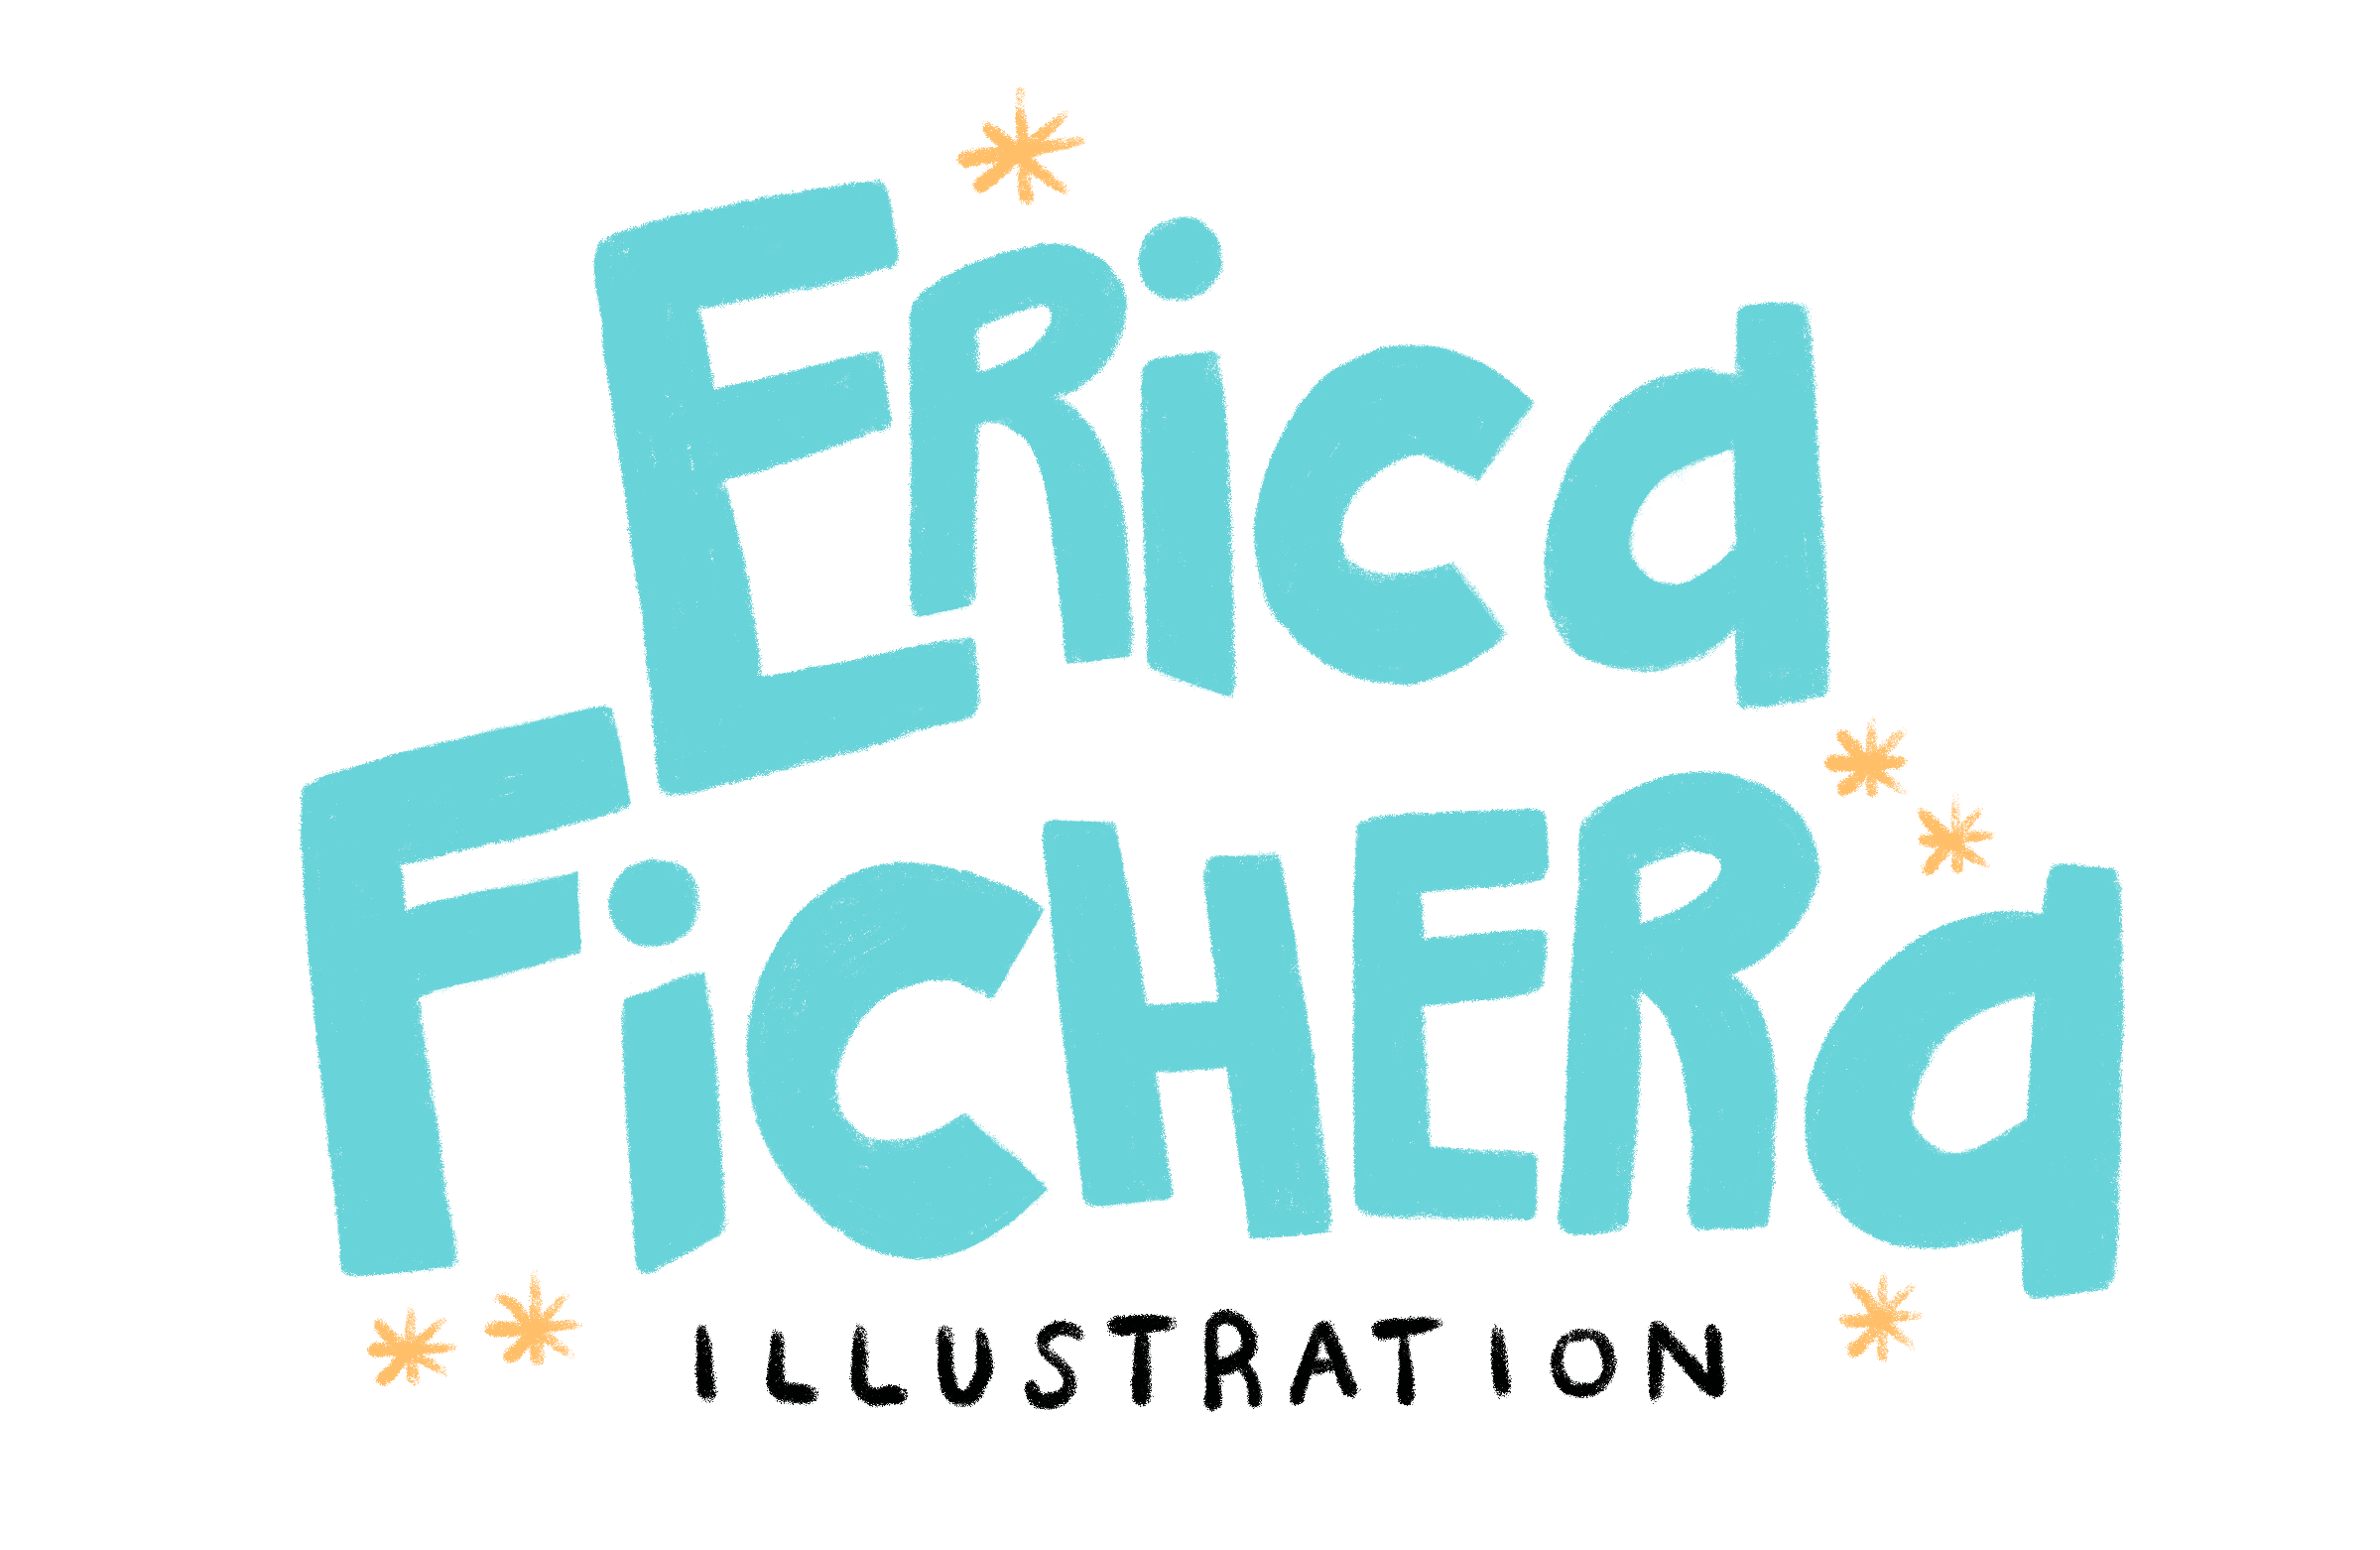 Erica Fichera